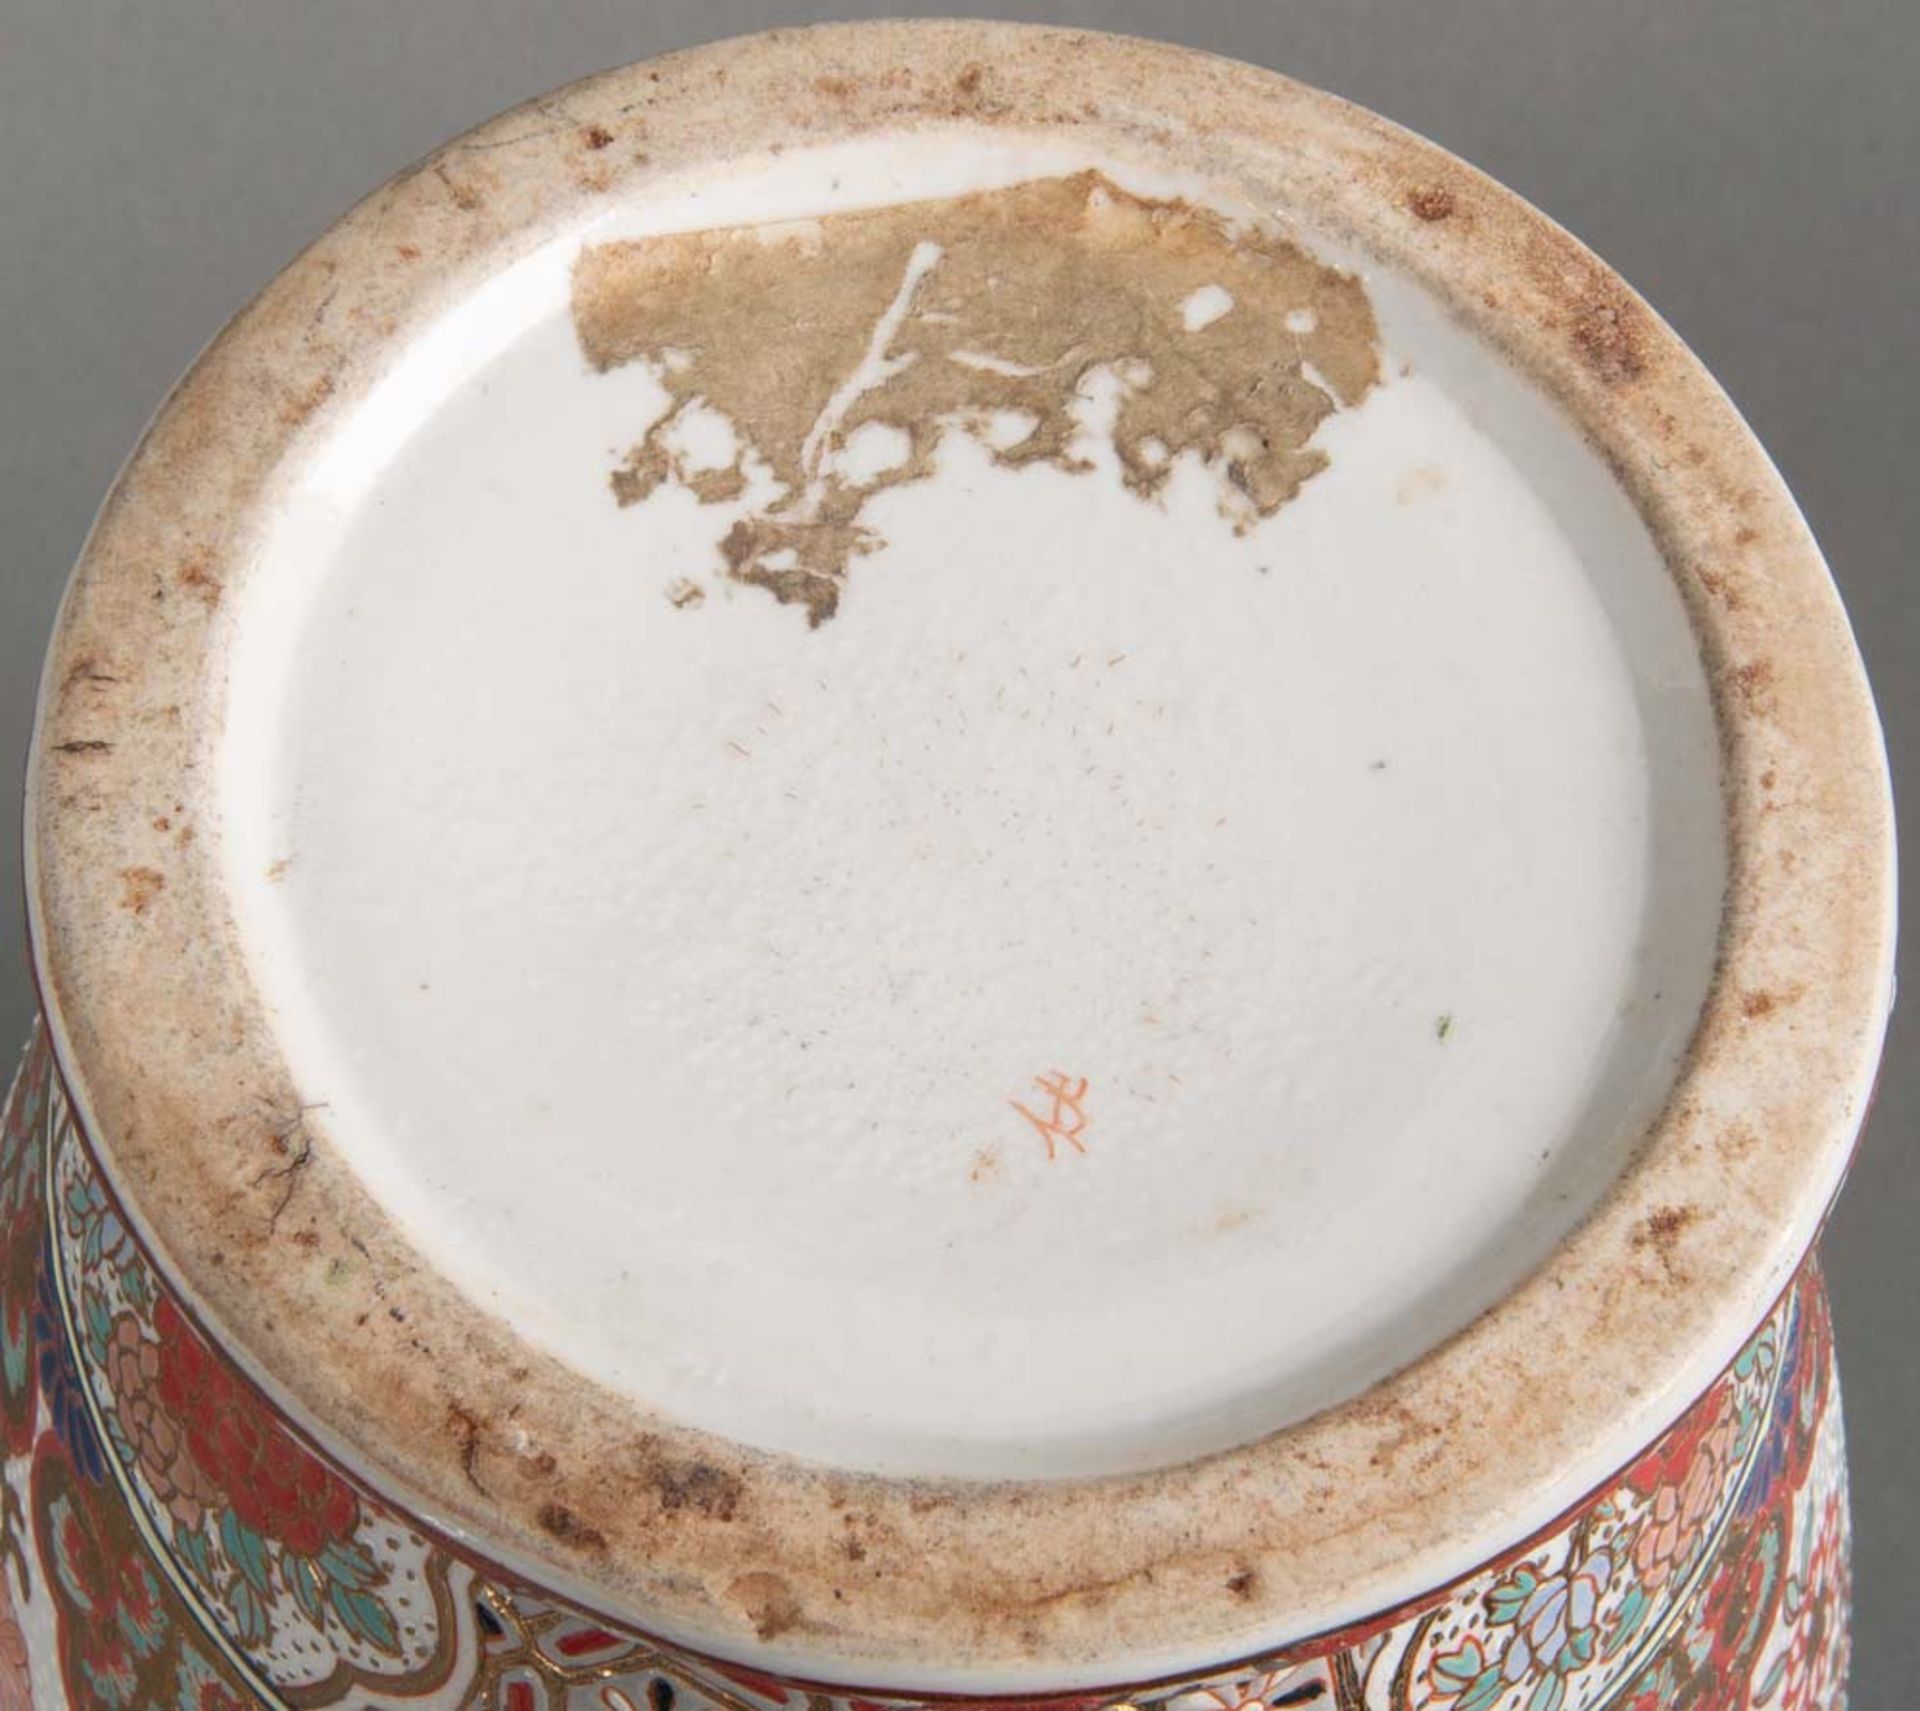 Vase. Asien. Porzellan, bunt bemalt mit Floral- und Golddekor, H=25 cm. - Bild 2 aus 2